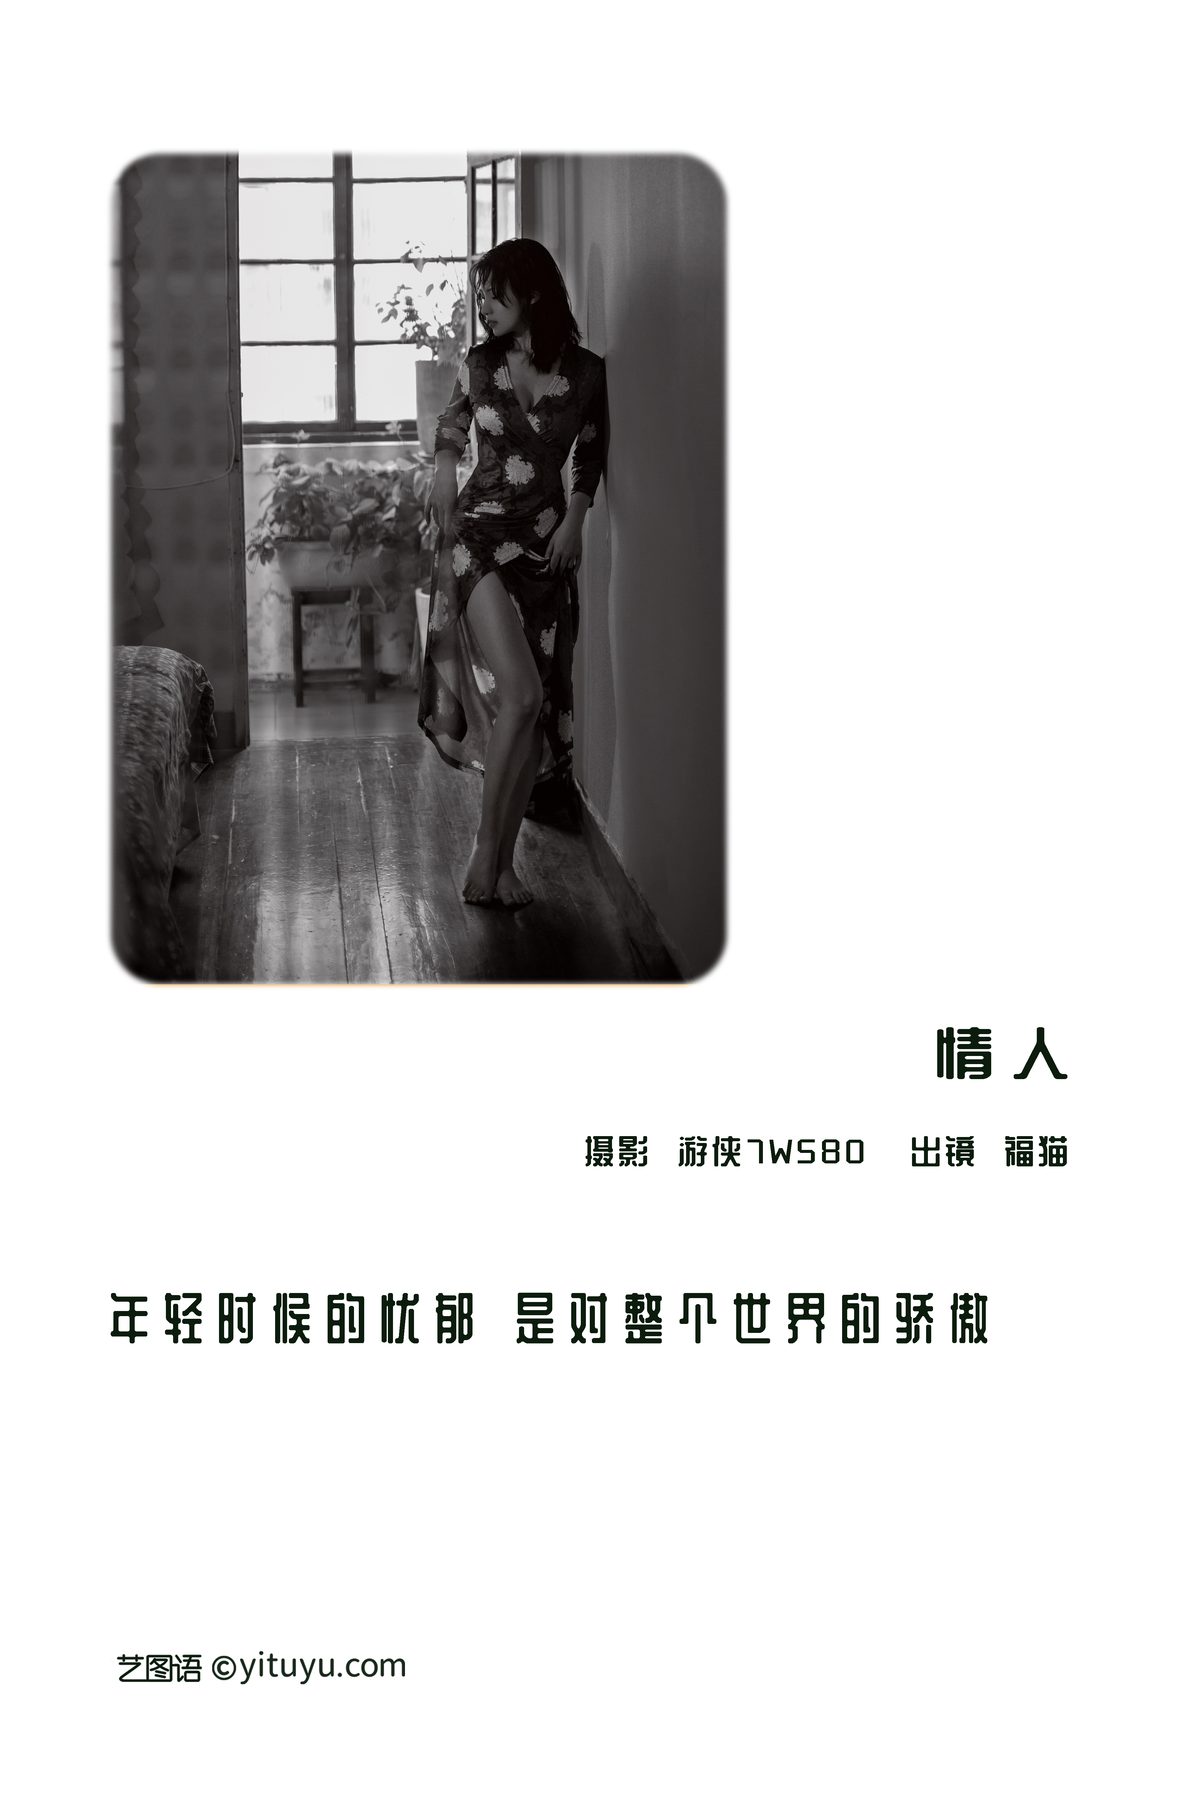 YiTuYu艺图语 Vol 3182 Fu Mao 0002 5603838700.jpg